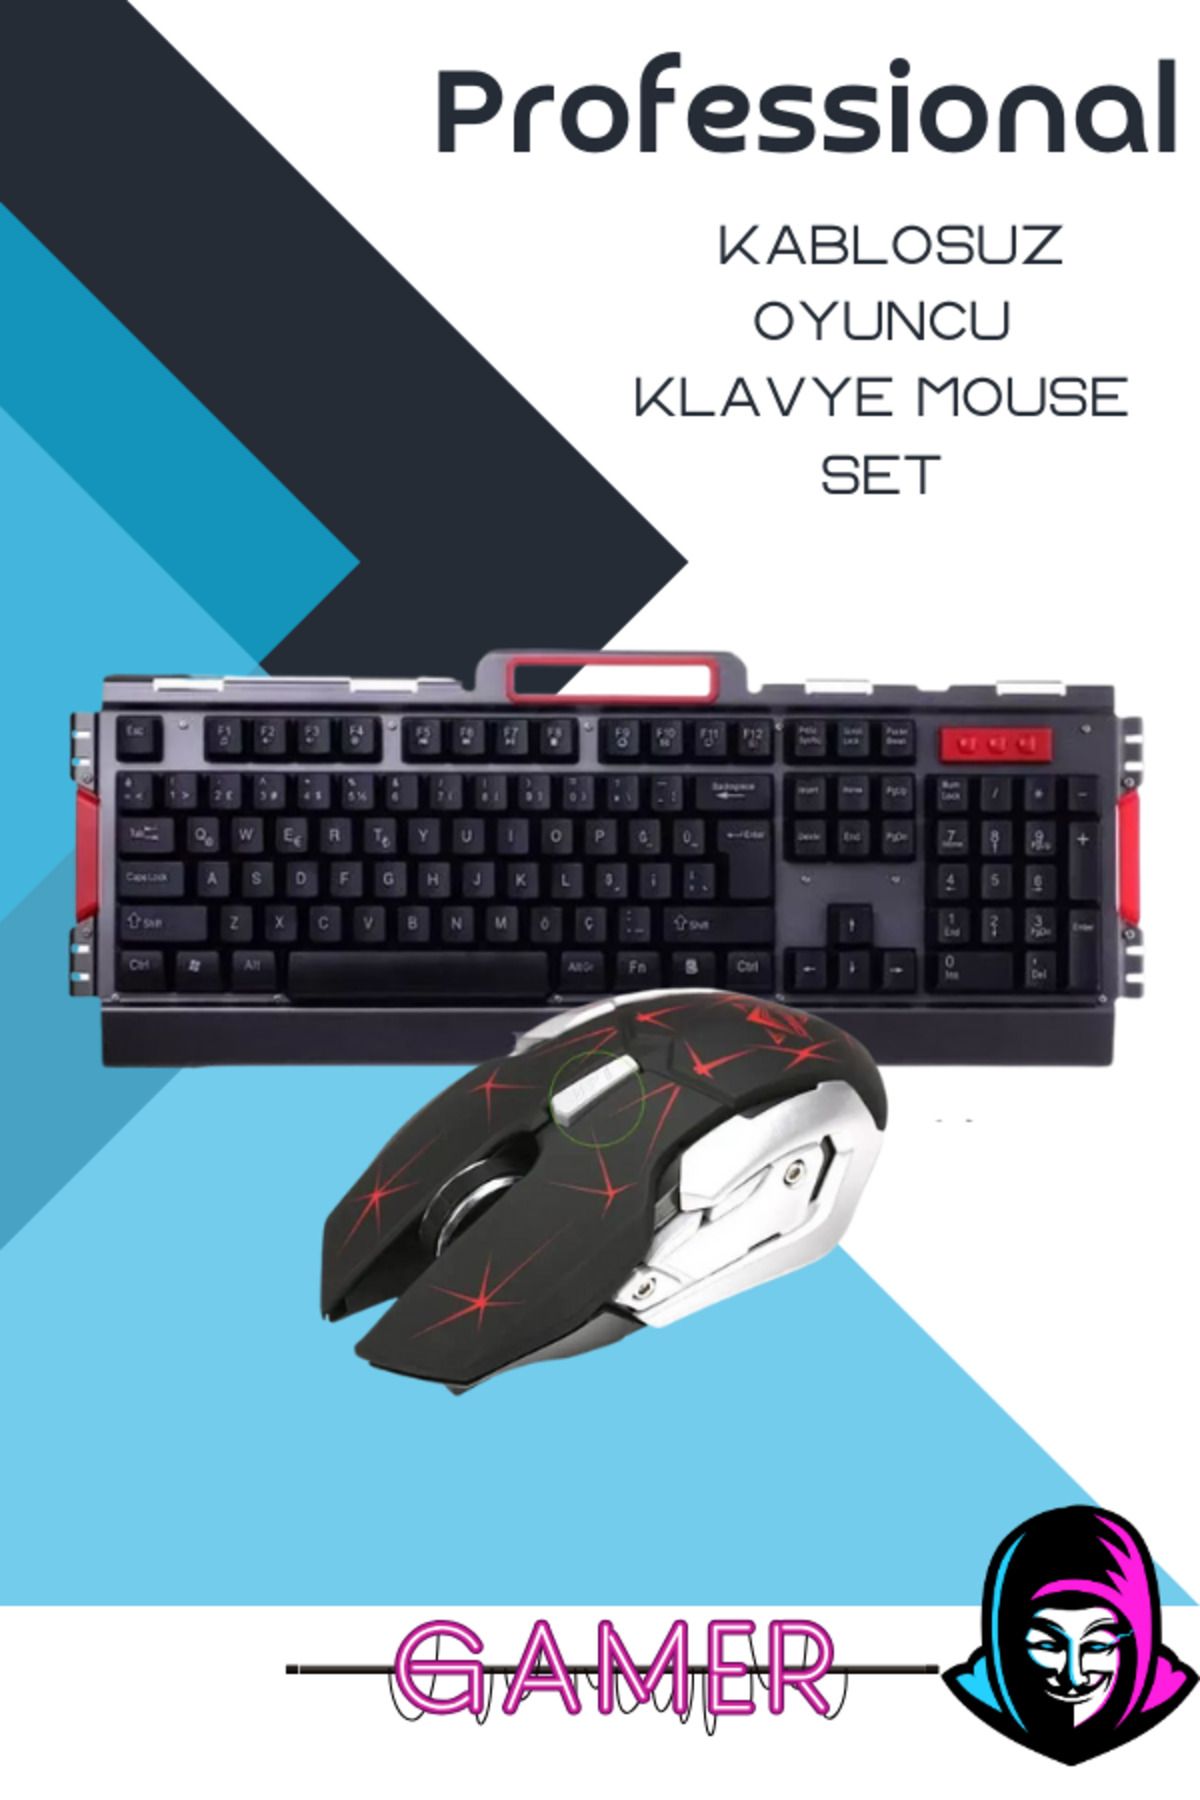 Maybax Professional Kablosuz Wireless Oyuncu Klavye Mouse Set